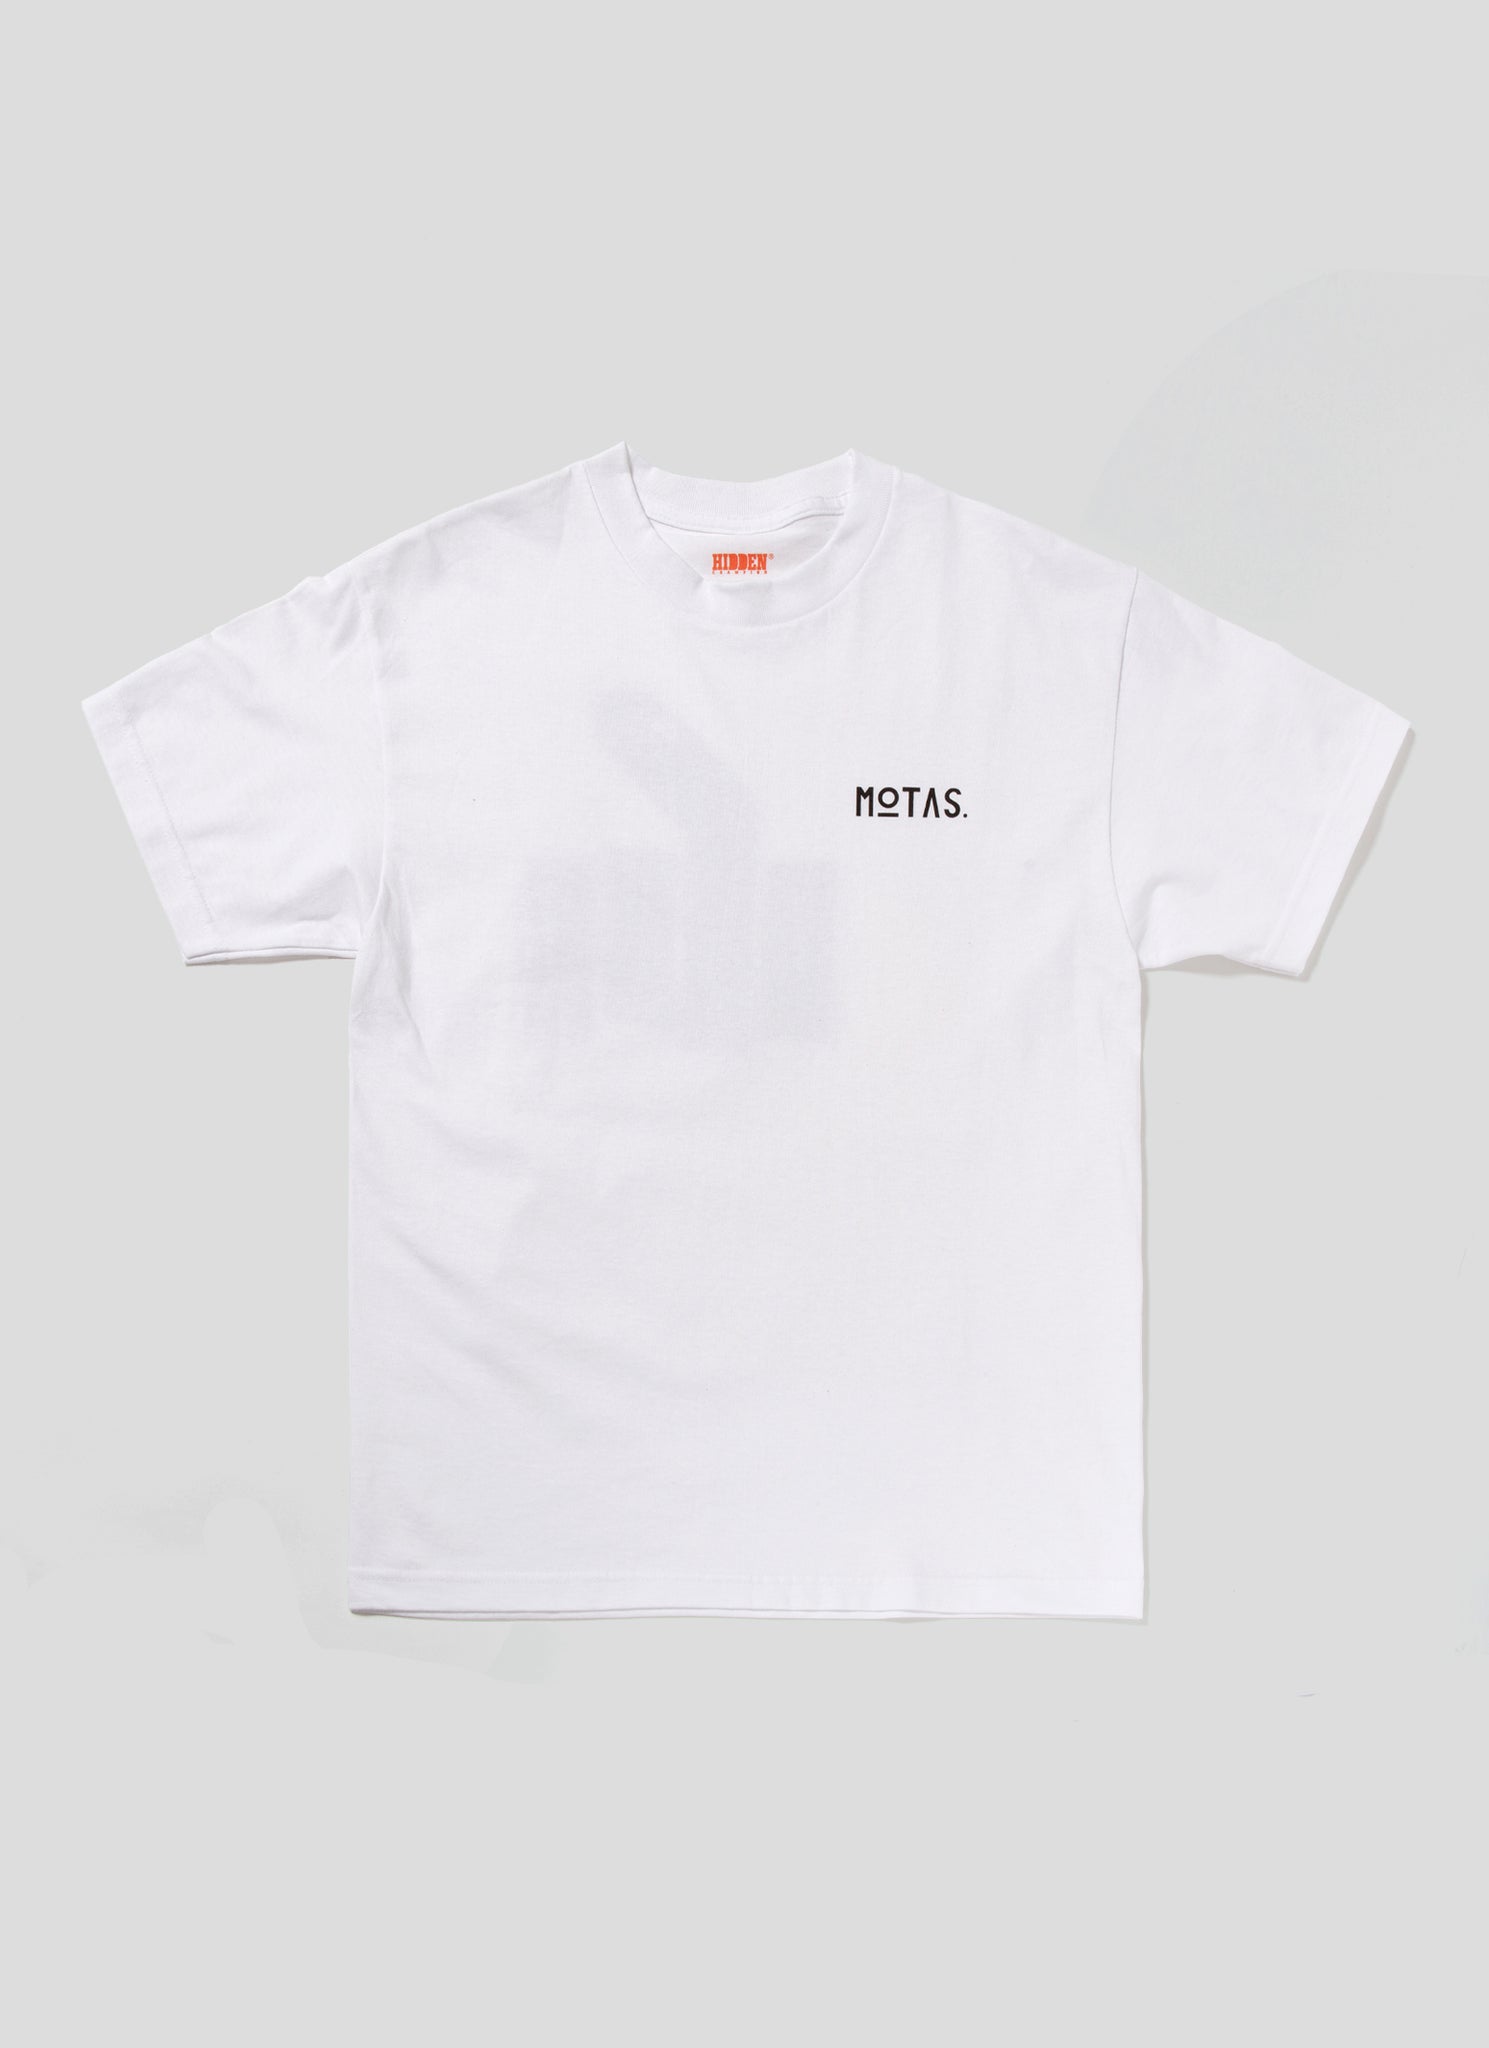 MOTAS. T-Shirt